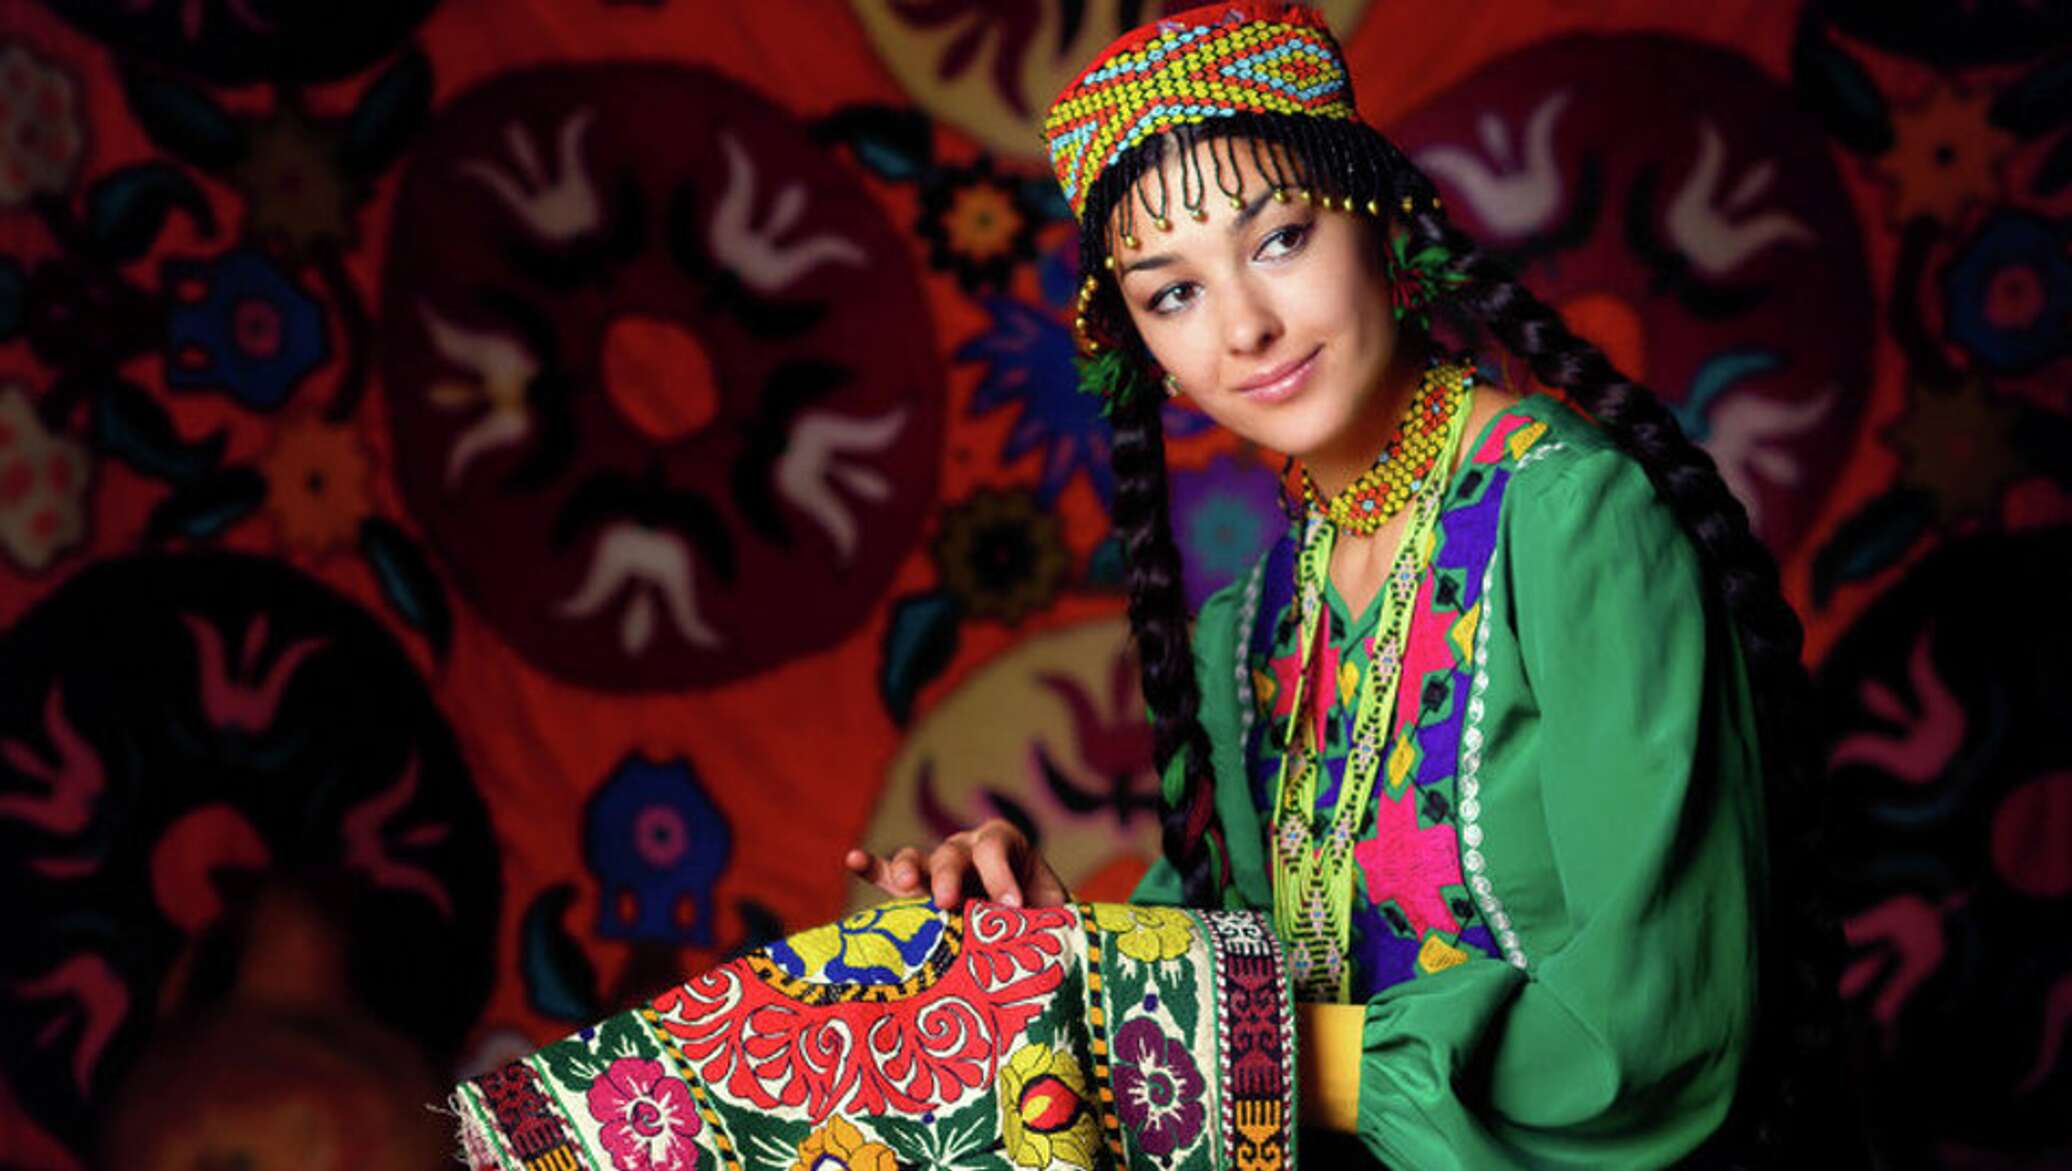 Аудио таджикский. Культура Таджикистана. Узбечка. Национальная одежда Таджикистана. Узбечки в национальной одежде.